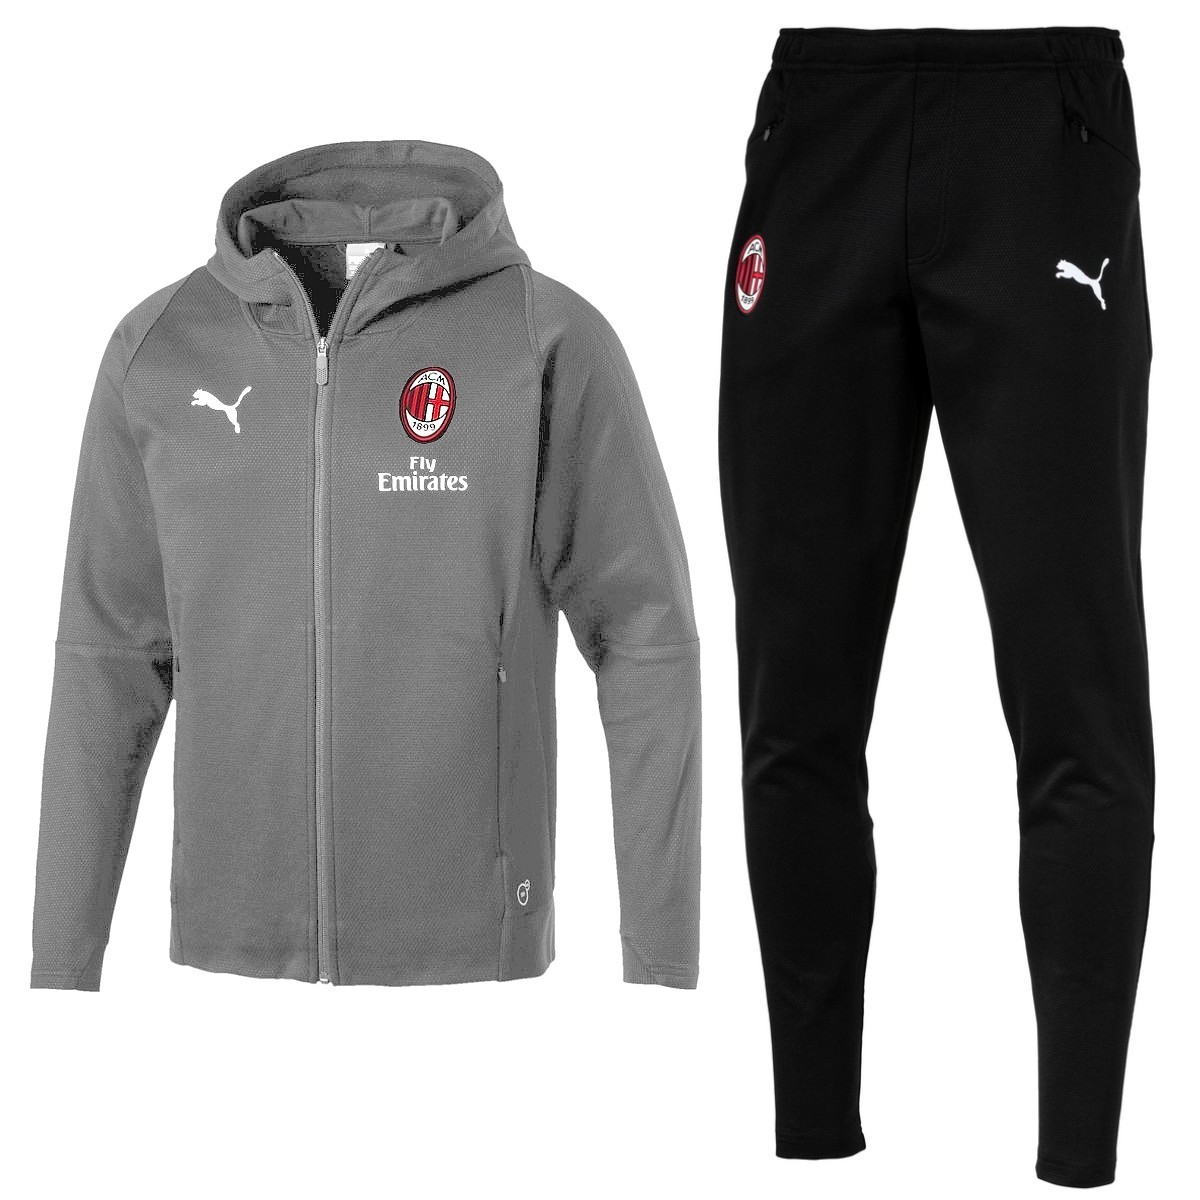 Comprar chandal Puma del AC Milan 2018/19 gris/negro